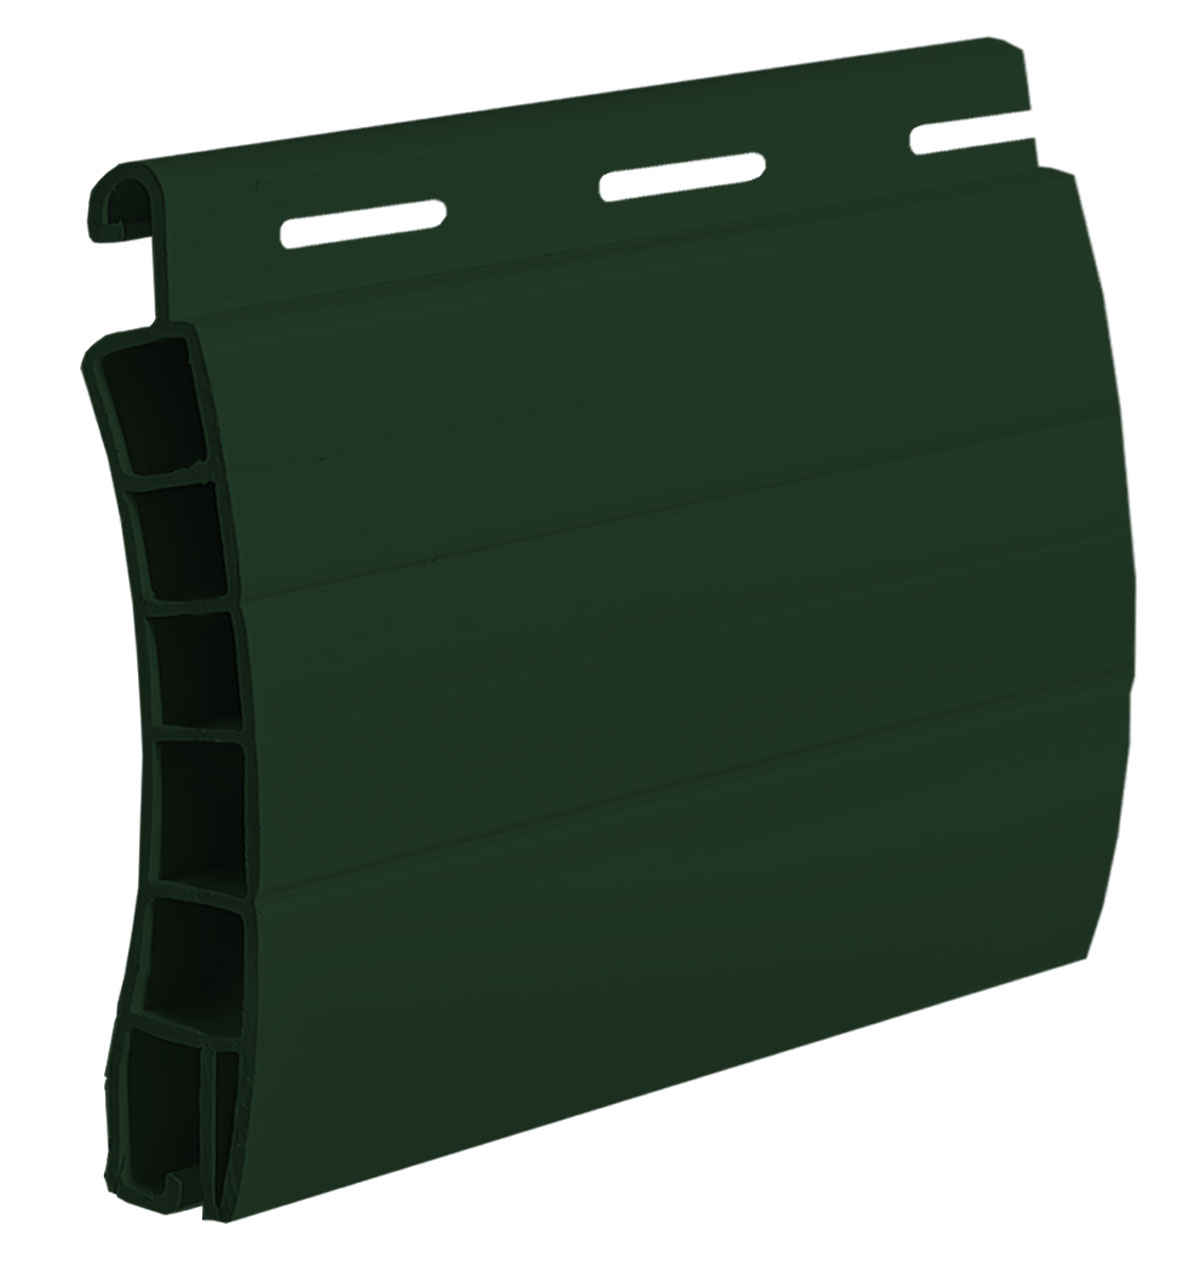  36 Verde Abete - Avvolgibile PVC - FIBREGLASS